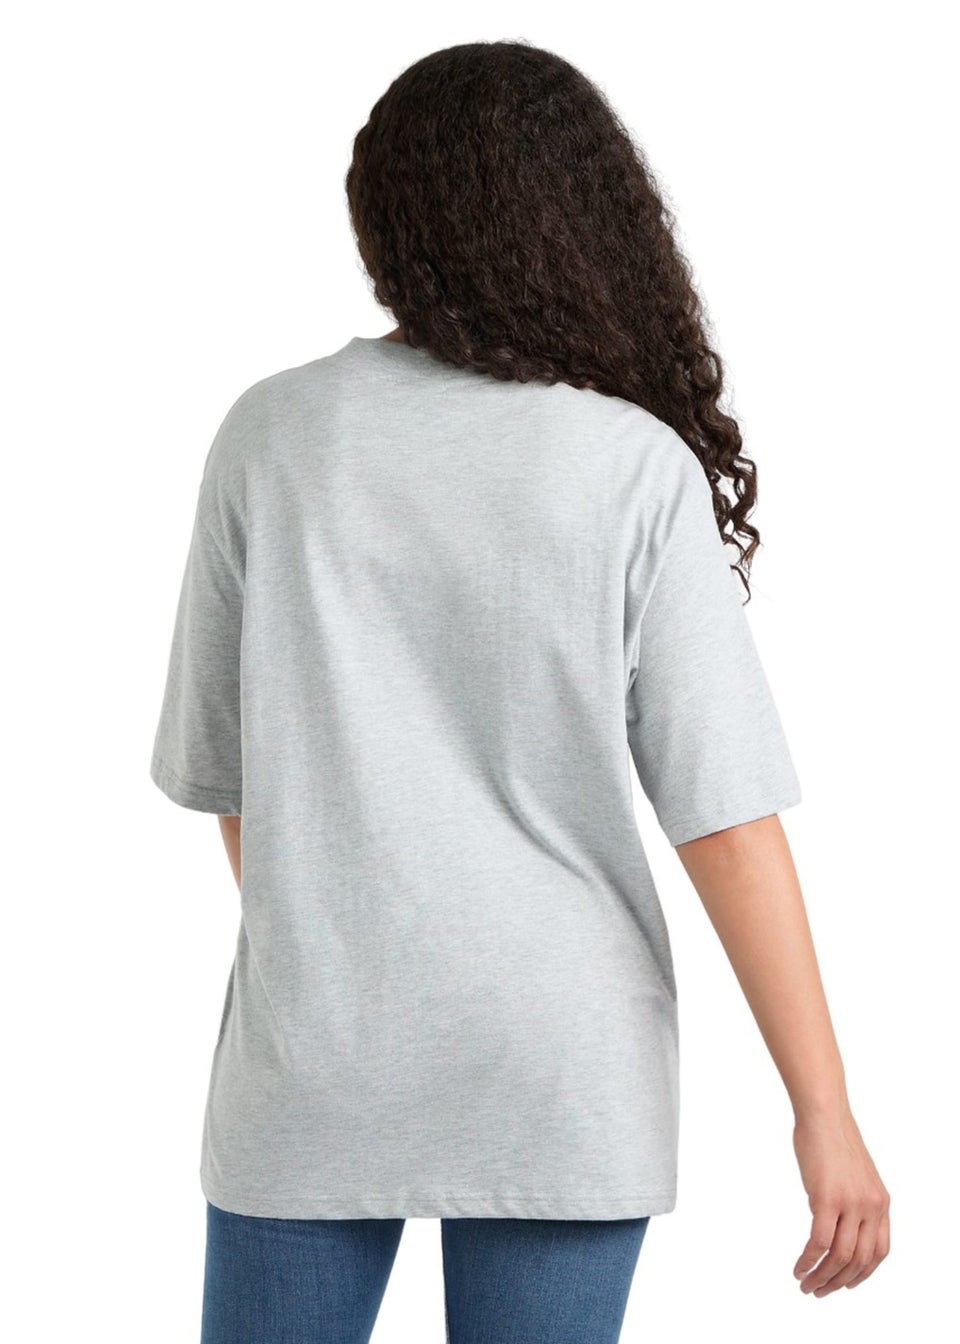 Umbro Grey/White Core Oversized T-Shirt